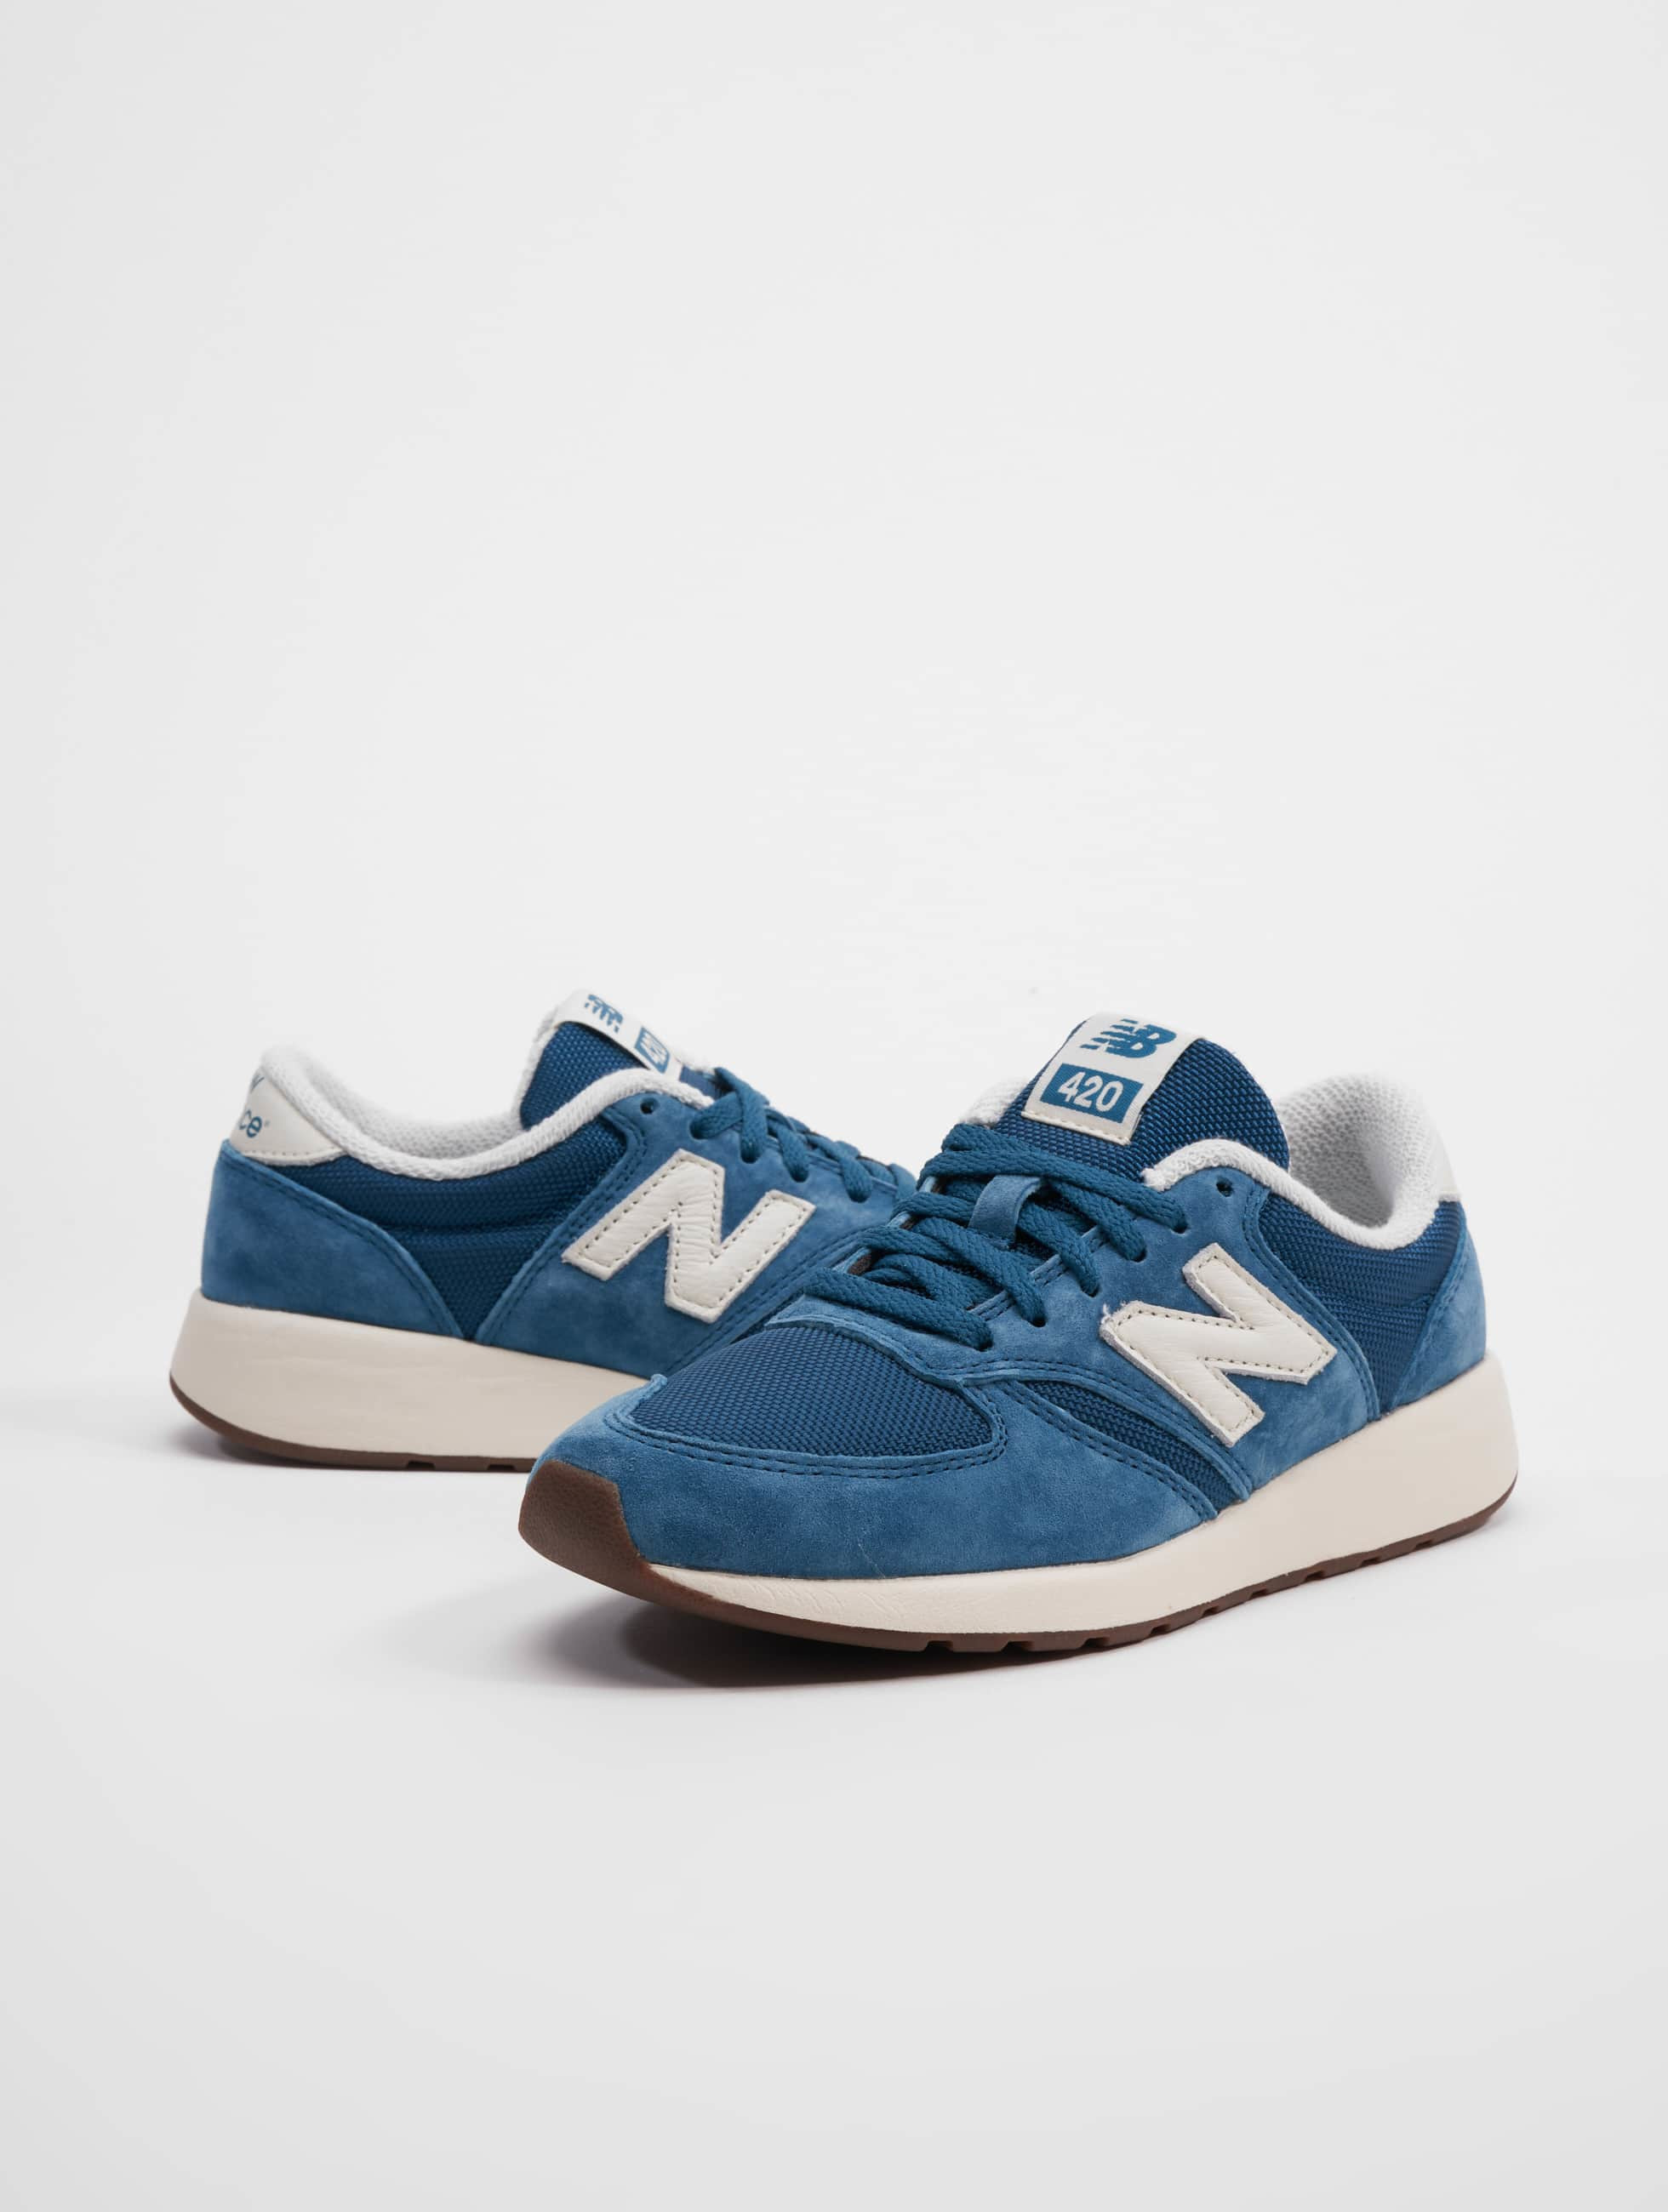 Absorberend Onderzoek het Hilarisch New Balance schoen / sneaker Wrl420 W in blauw 1046711